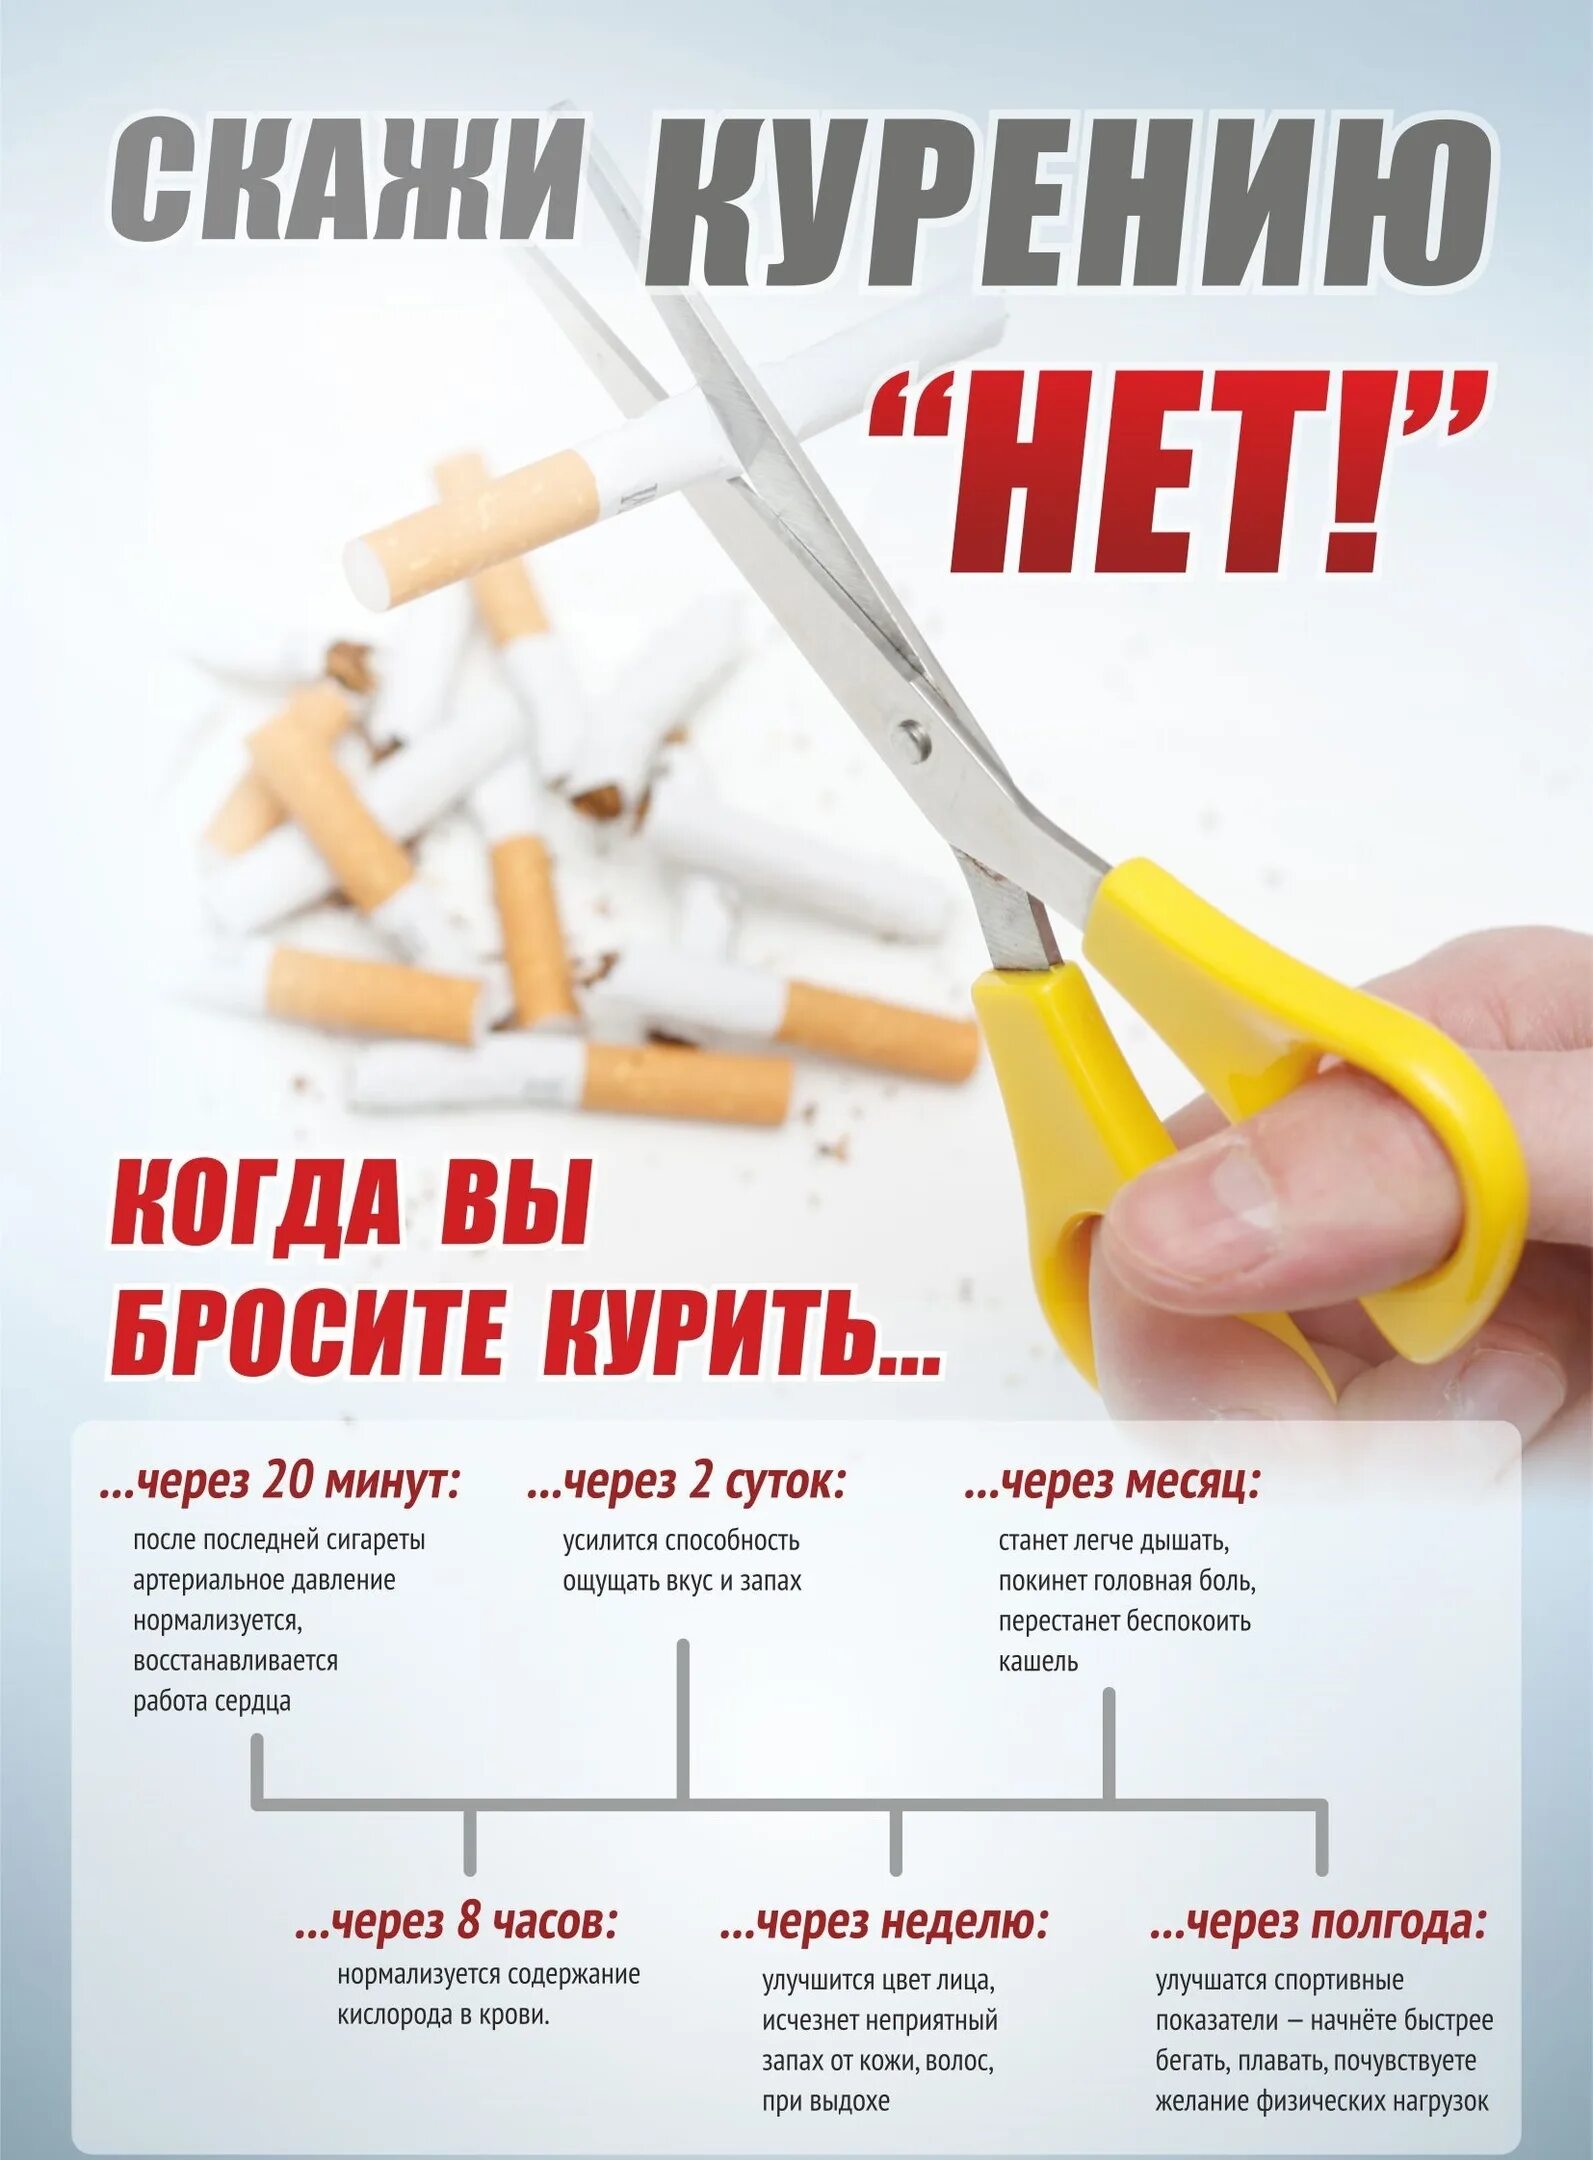 Про бросить курить. Плакат «вред курения». Профилактика курения плакат. Пл акат о выреде курения. Плакат бросай курить.